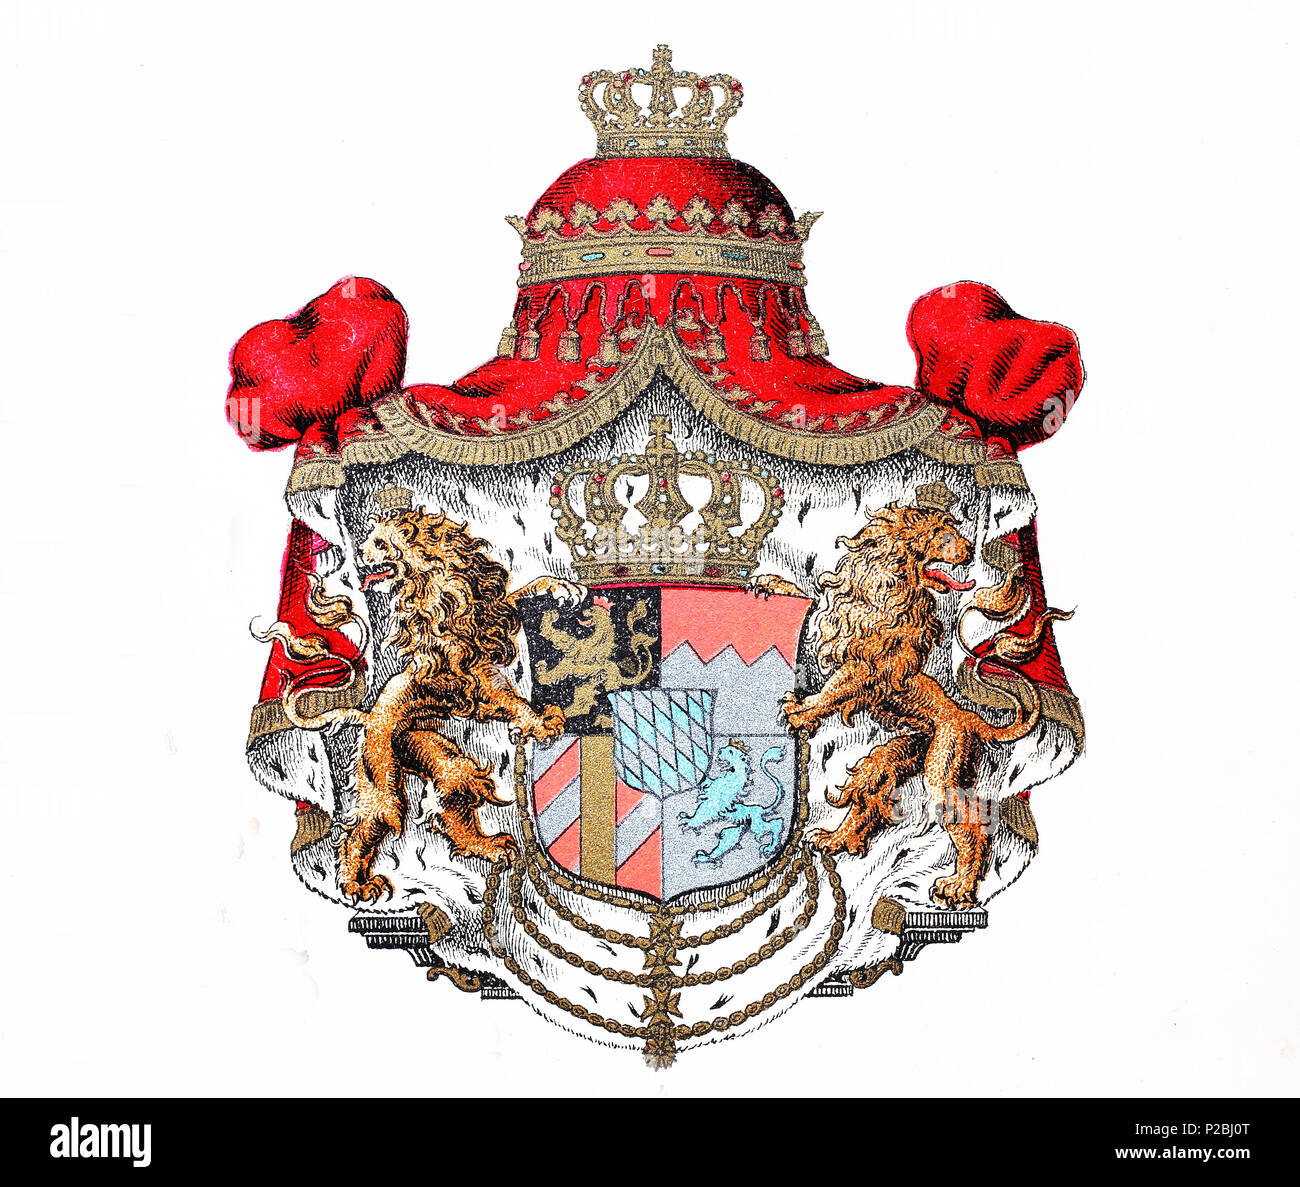 Wappen des Königreichs Bayern, Deutschland, Wappen des Königreich Bayern, Deutschland, digital verbesserte Reproduktion von einem ursprünglichen Drucken aus dem 19. Jahrhundert, 1881 Stockfoto